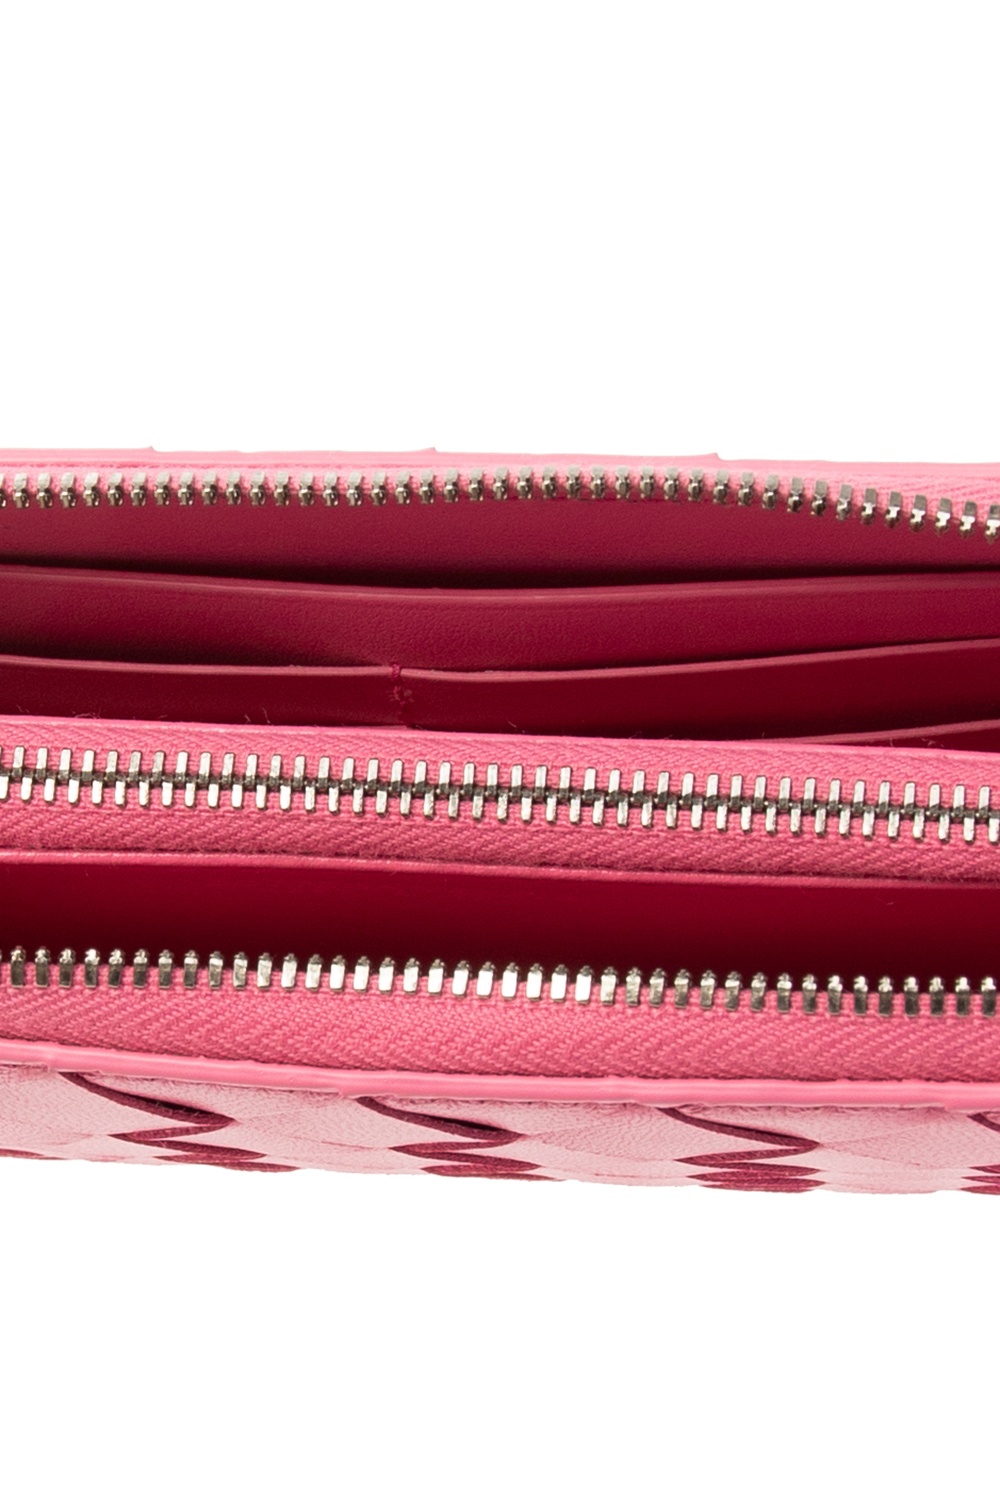 Bottega Veneta ‘Intrecciato’ weave wallet